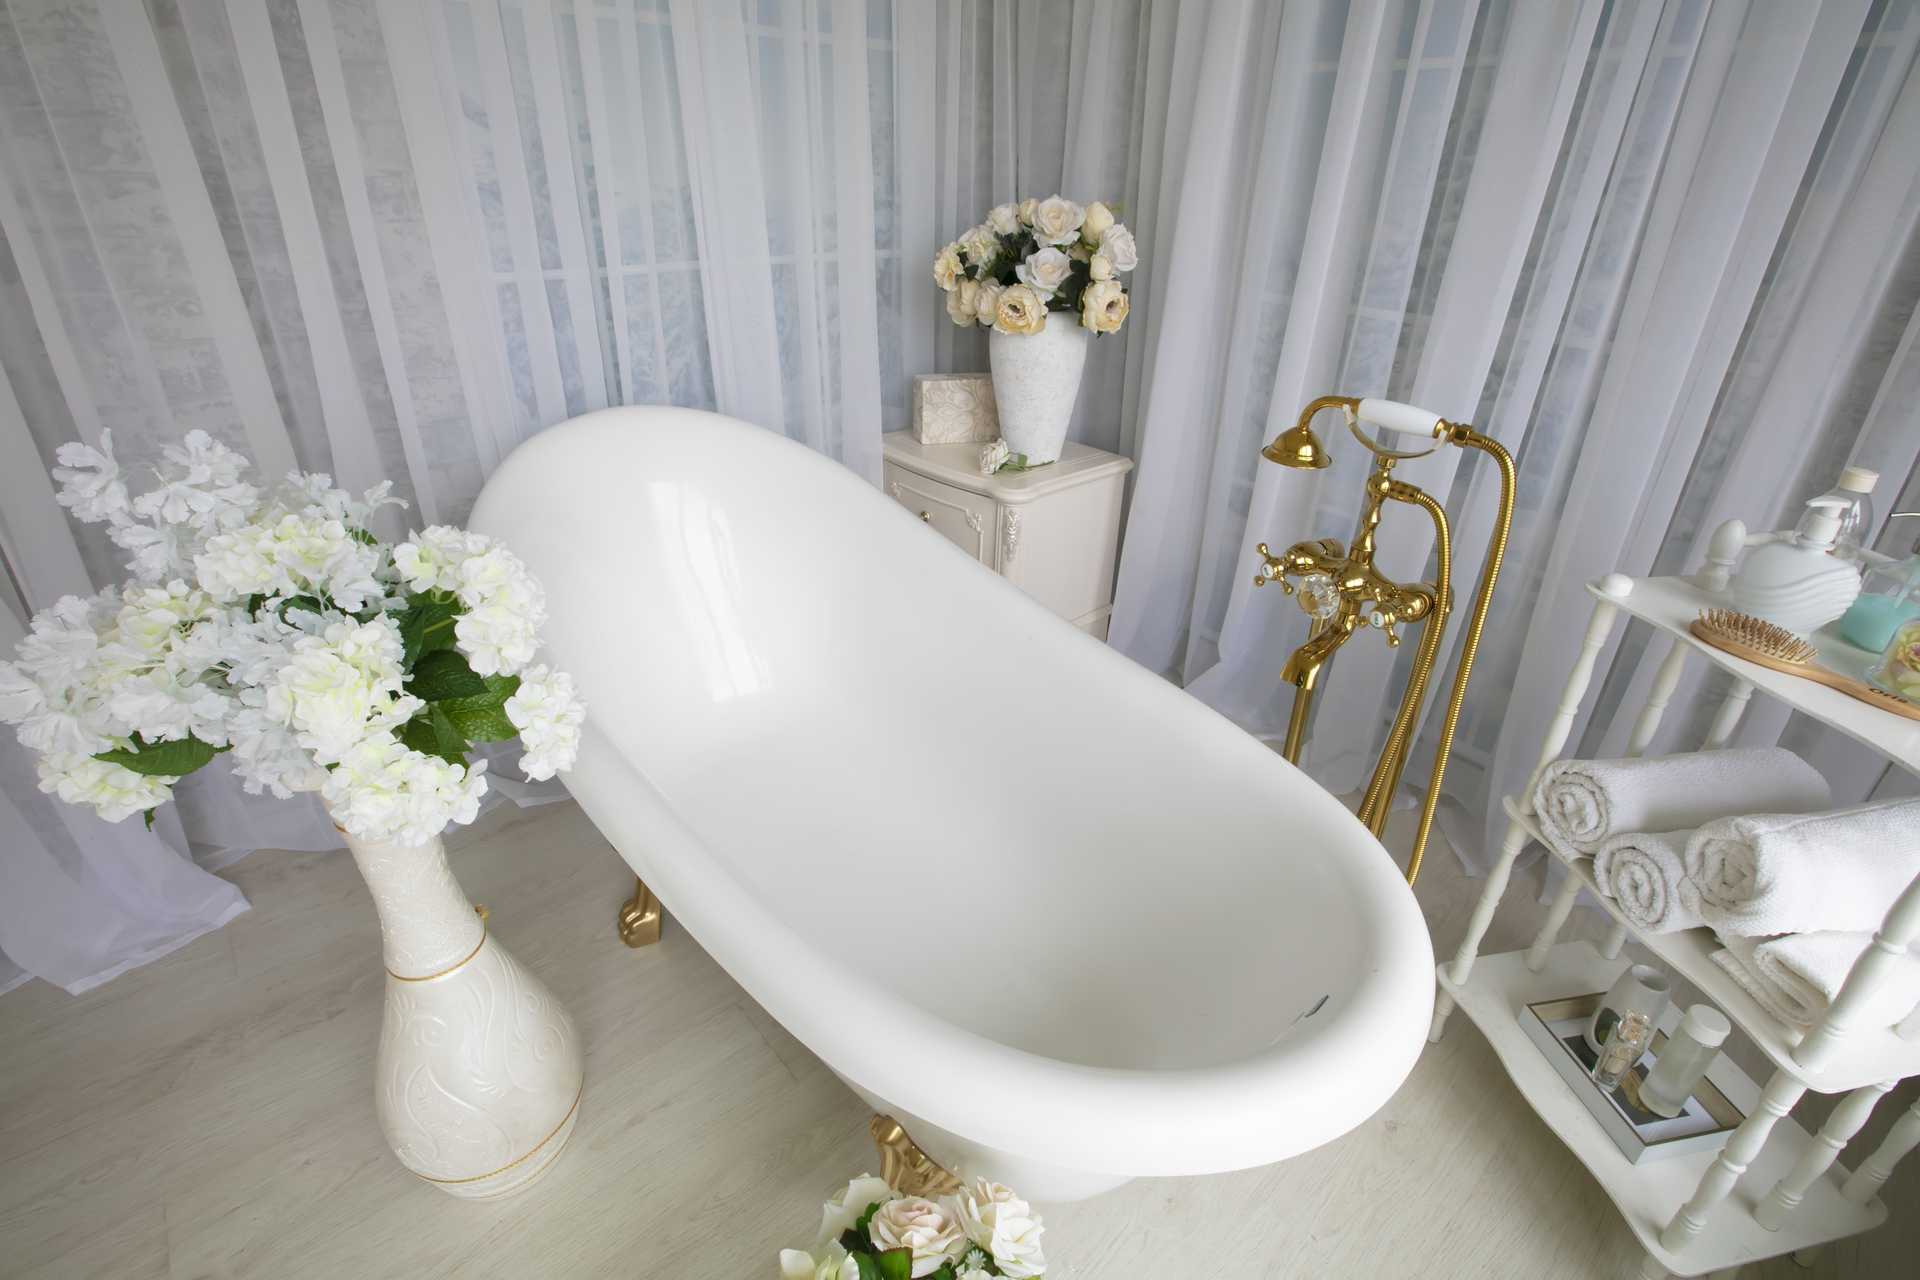 Ten wspaniały obrazek przedstawia białą łazienkę w stylu biało złotym, która emanuje pięknem i elegancją. Ściany pokryte jasnymi płytkami nadają wnętrzu czystość i przestronność, tworząc harmonijną atmosferę relaksu. Złote akcenty, takie jak kraniki i dodatki, dodają tej łazience wyjątkowego blasku i luksusowego charakteru, sprawiając, że jest to miejsce pełne przepychu i stylu